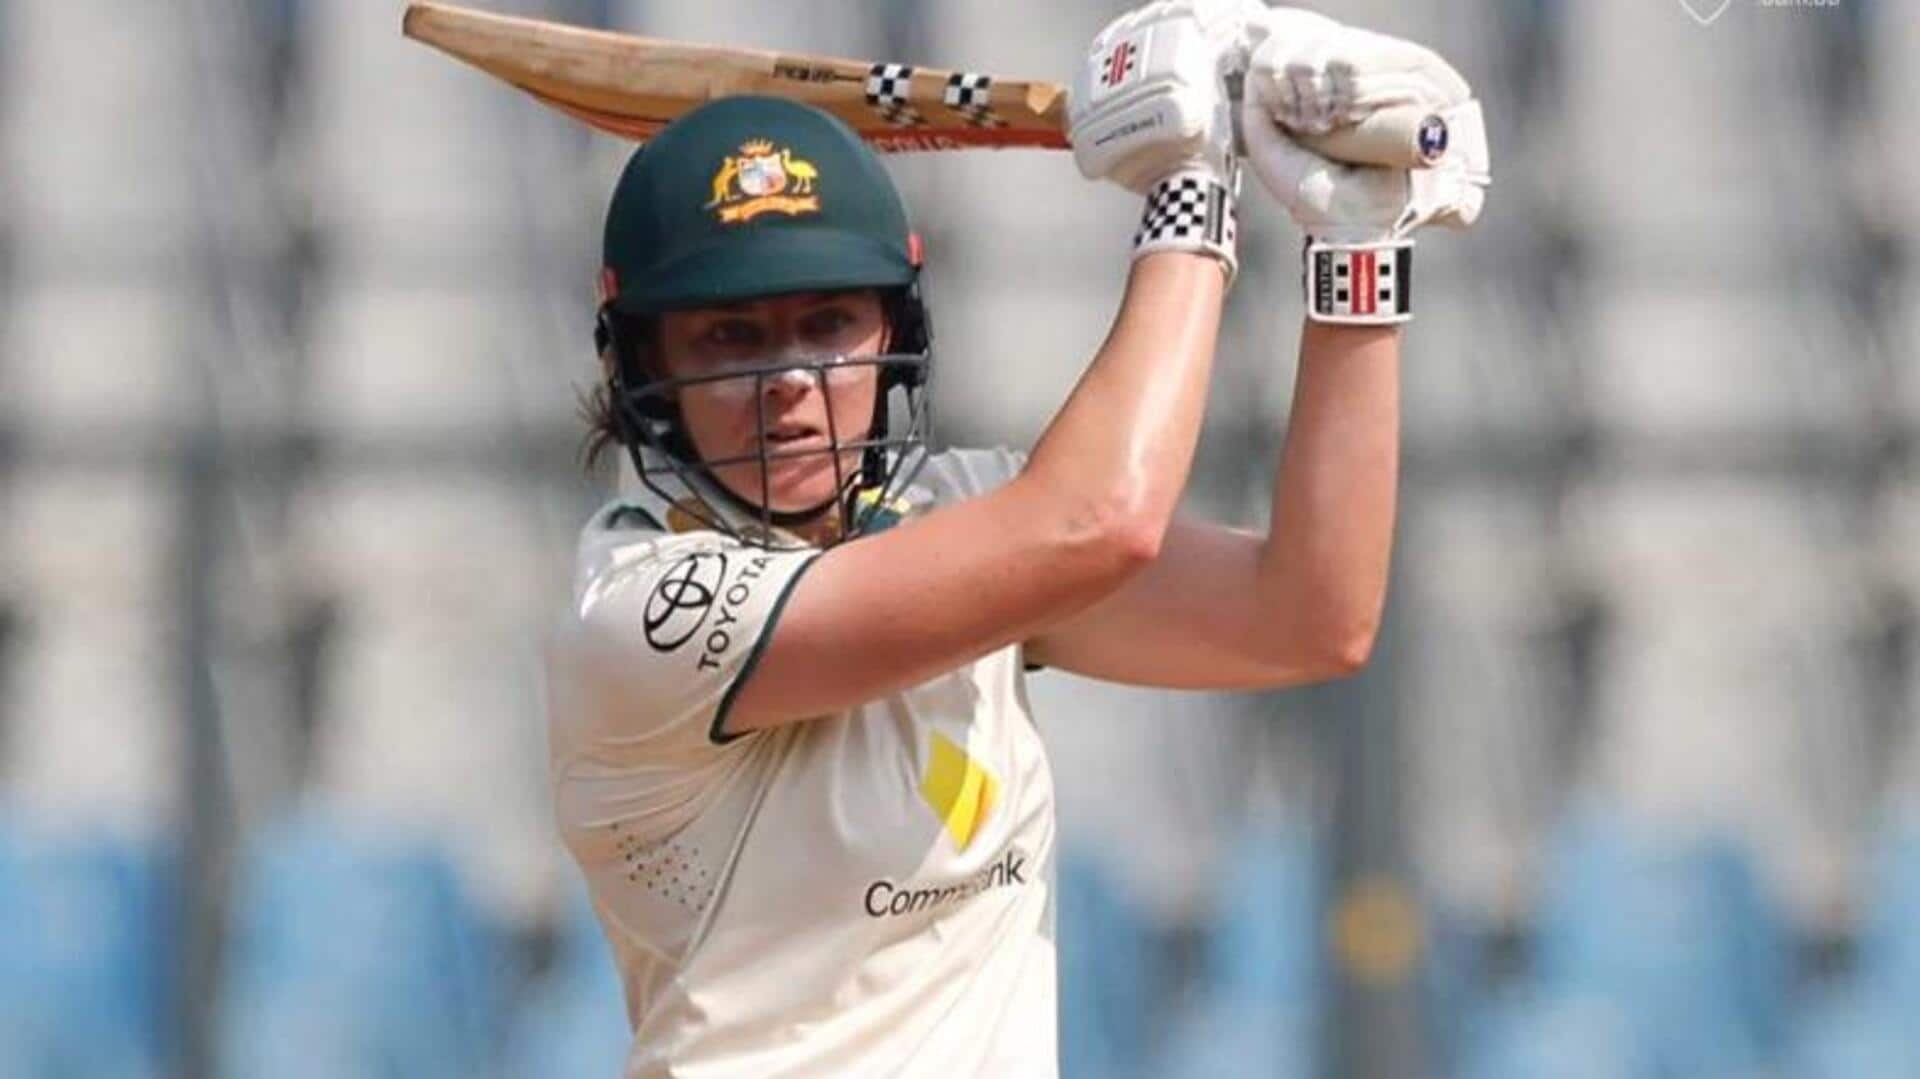 भारत बनाम ऑस्ट्रेलिया: ताहलिया मैकग्राथ ने बनाया टेस्ट करियर का सर्वाधिक स्कोर, जानिए उनके आंकड़े